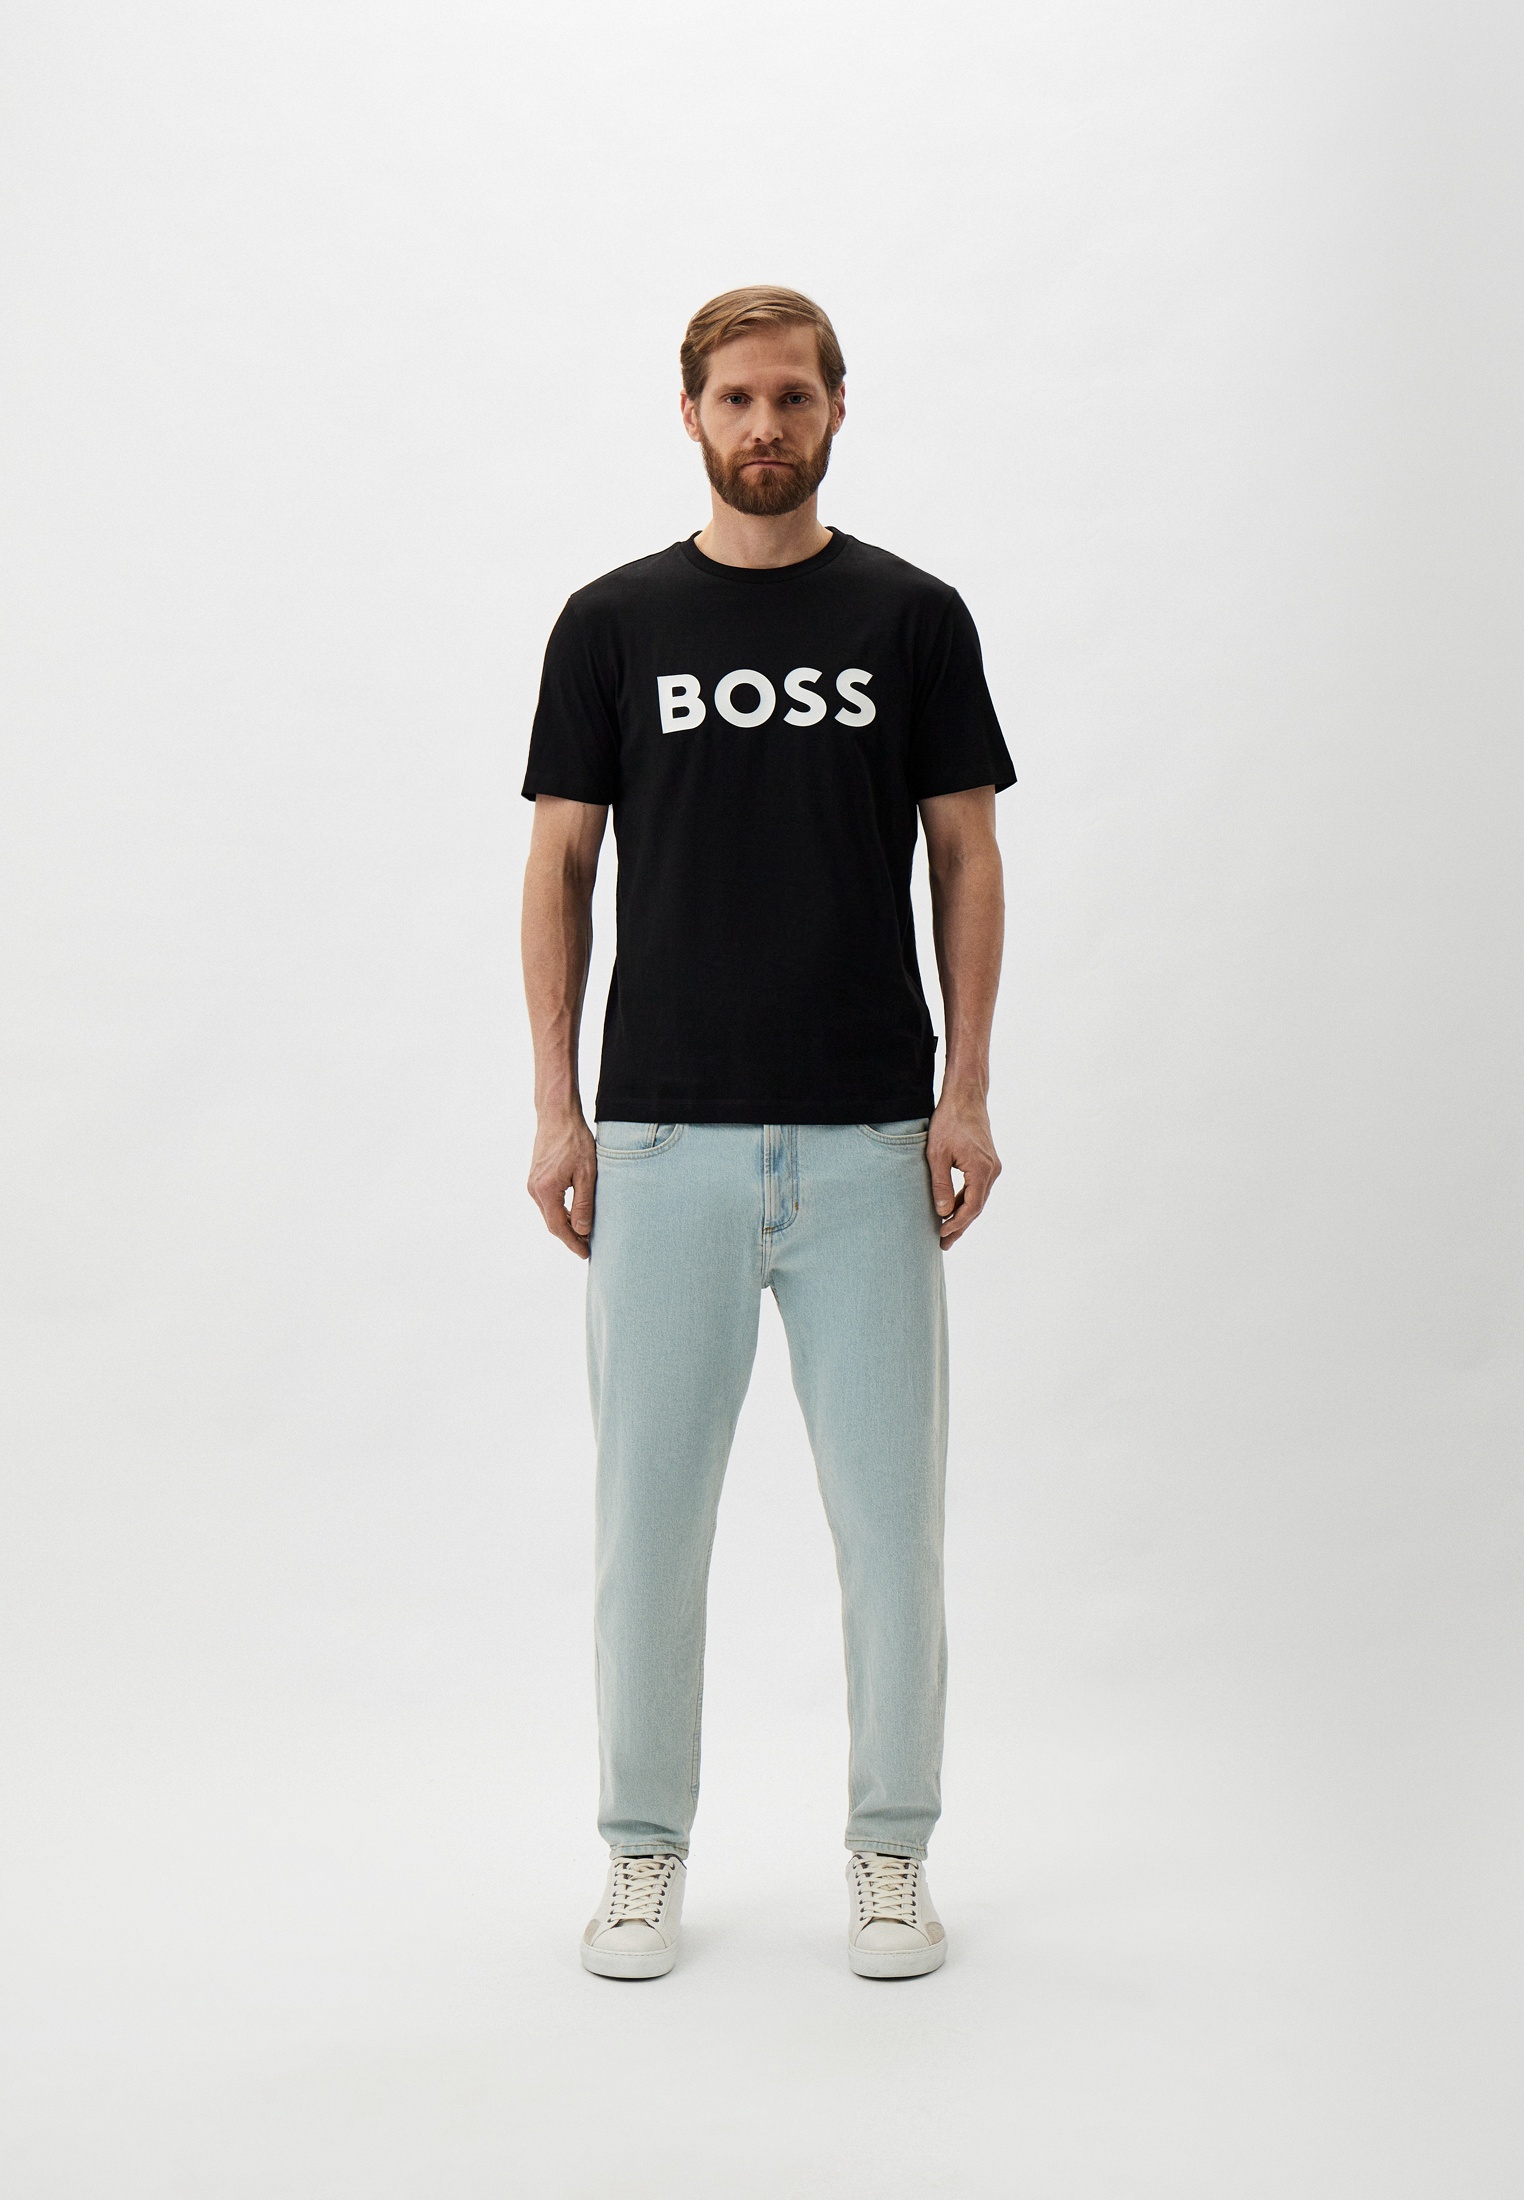 Мужская футболка Boss (Босс) 50495742: изображение 2